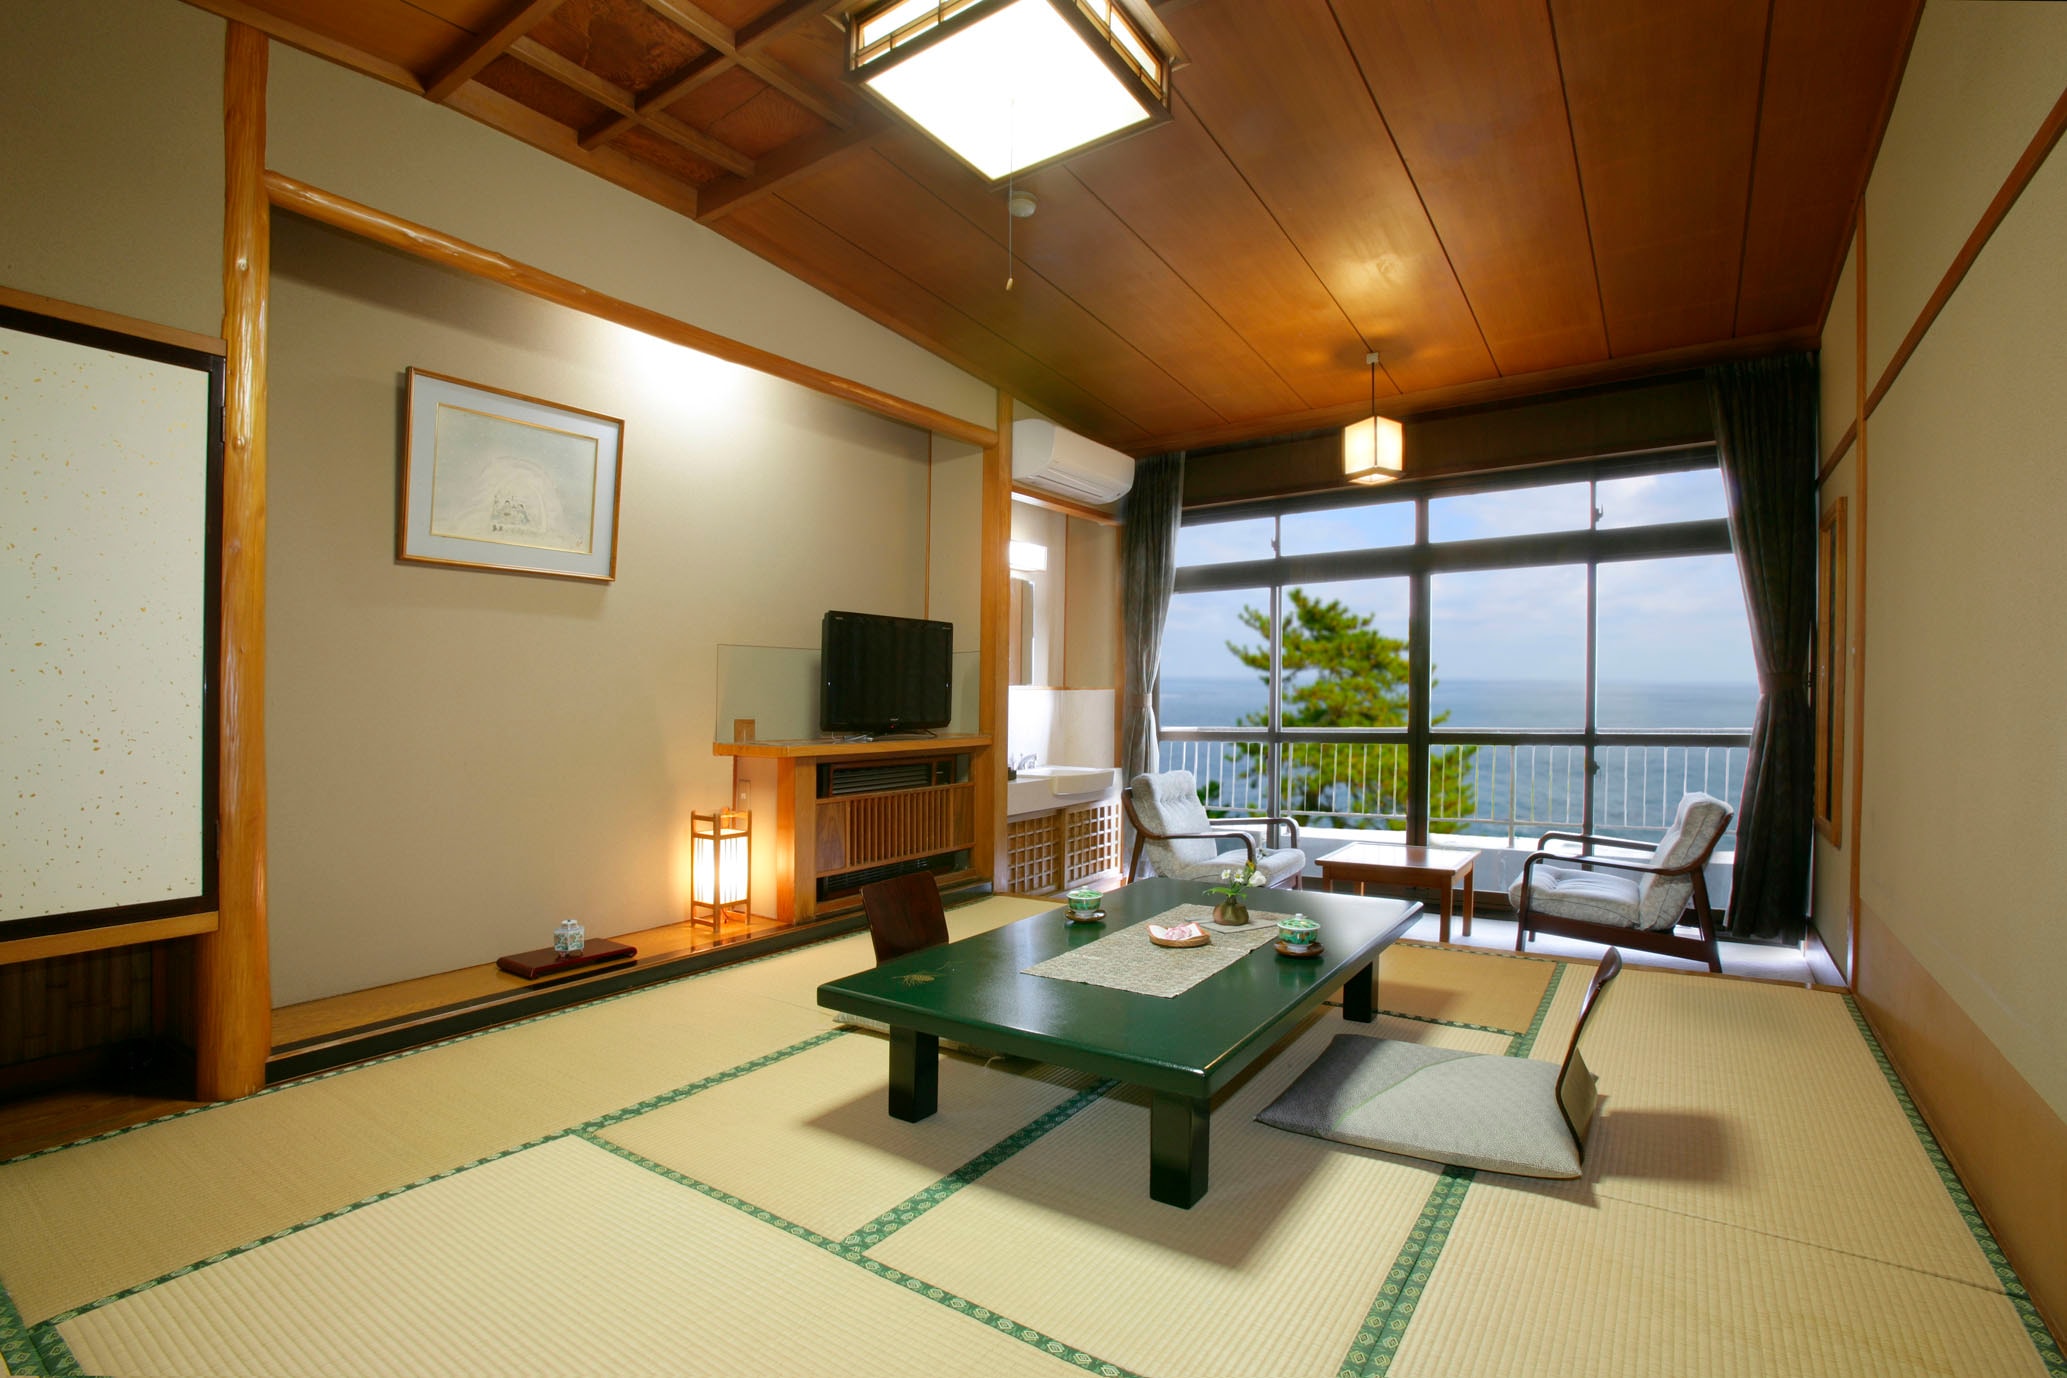 Annex Daikanso South Building Kamar bergaya Jepang tepi laut 8 tatami kamar standar